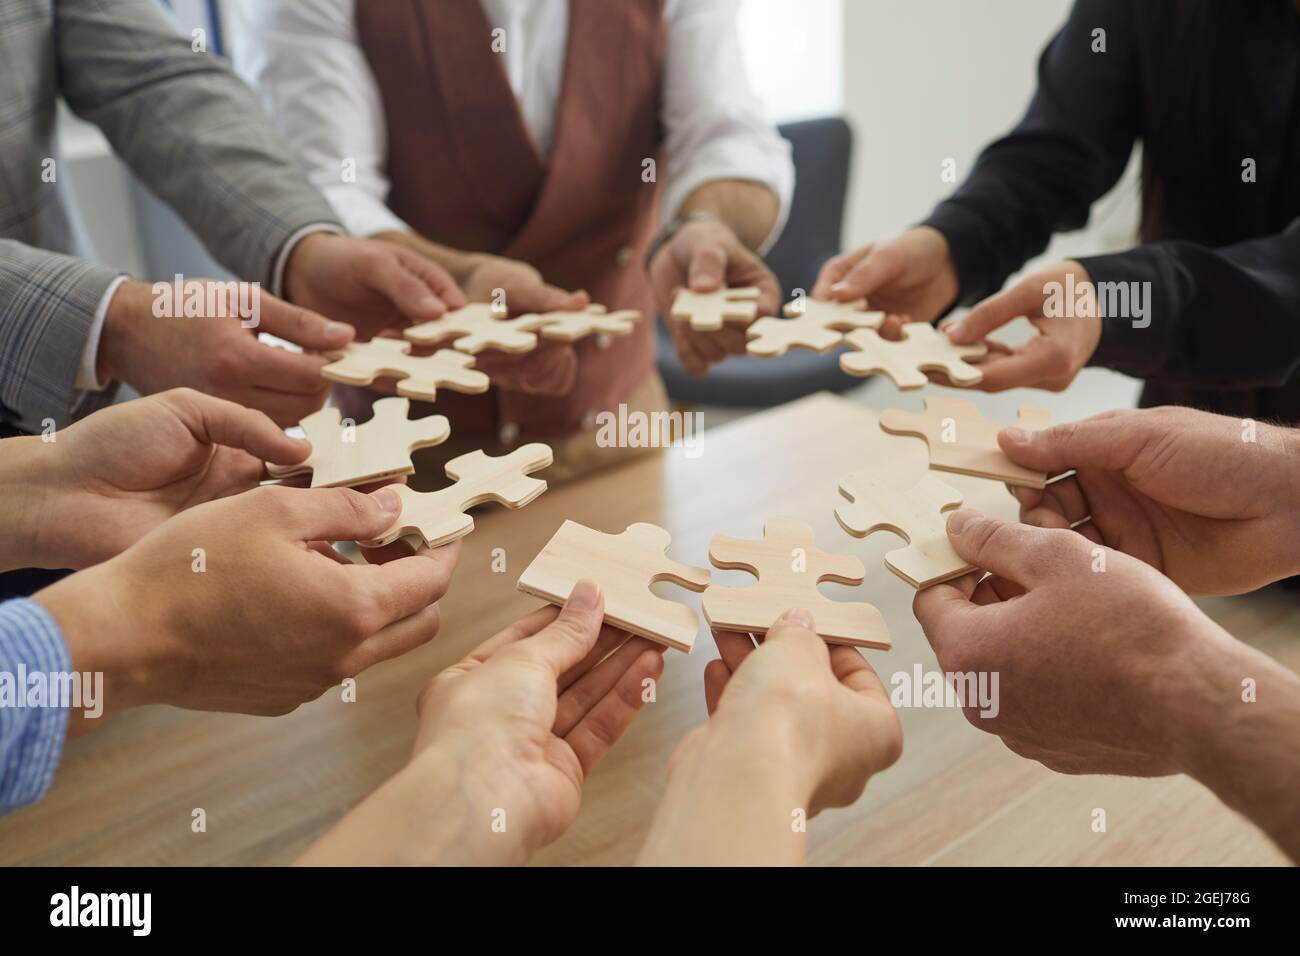 Eine Gruppe von Geschäftsleuten, die Teile eines Puzzles halten und zusammenfügen Stockfoto